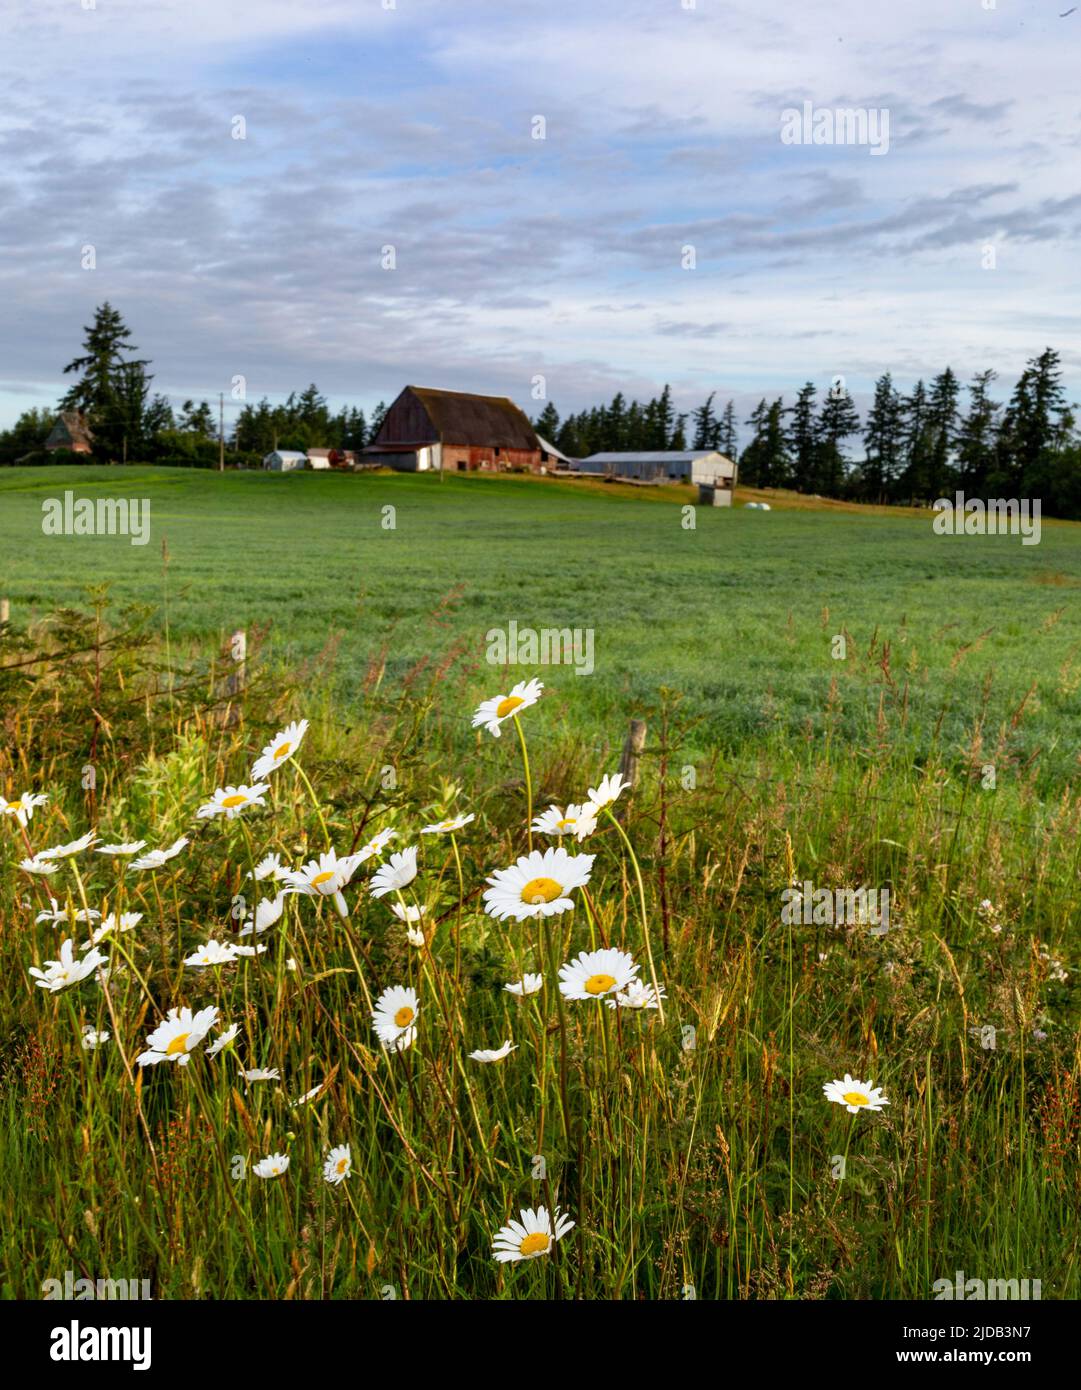 Champ herbacé avec marguerites et bâtiments agricoles; Surrey, Colombie-Britannique, Canada Banque D'Images